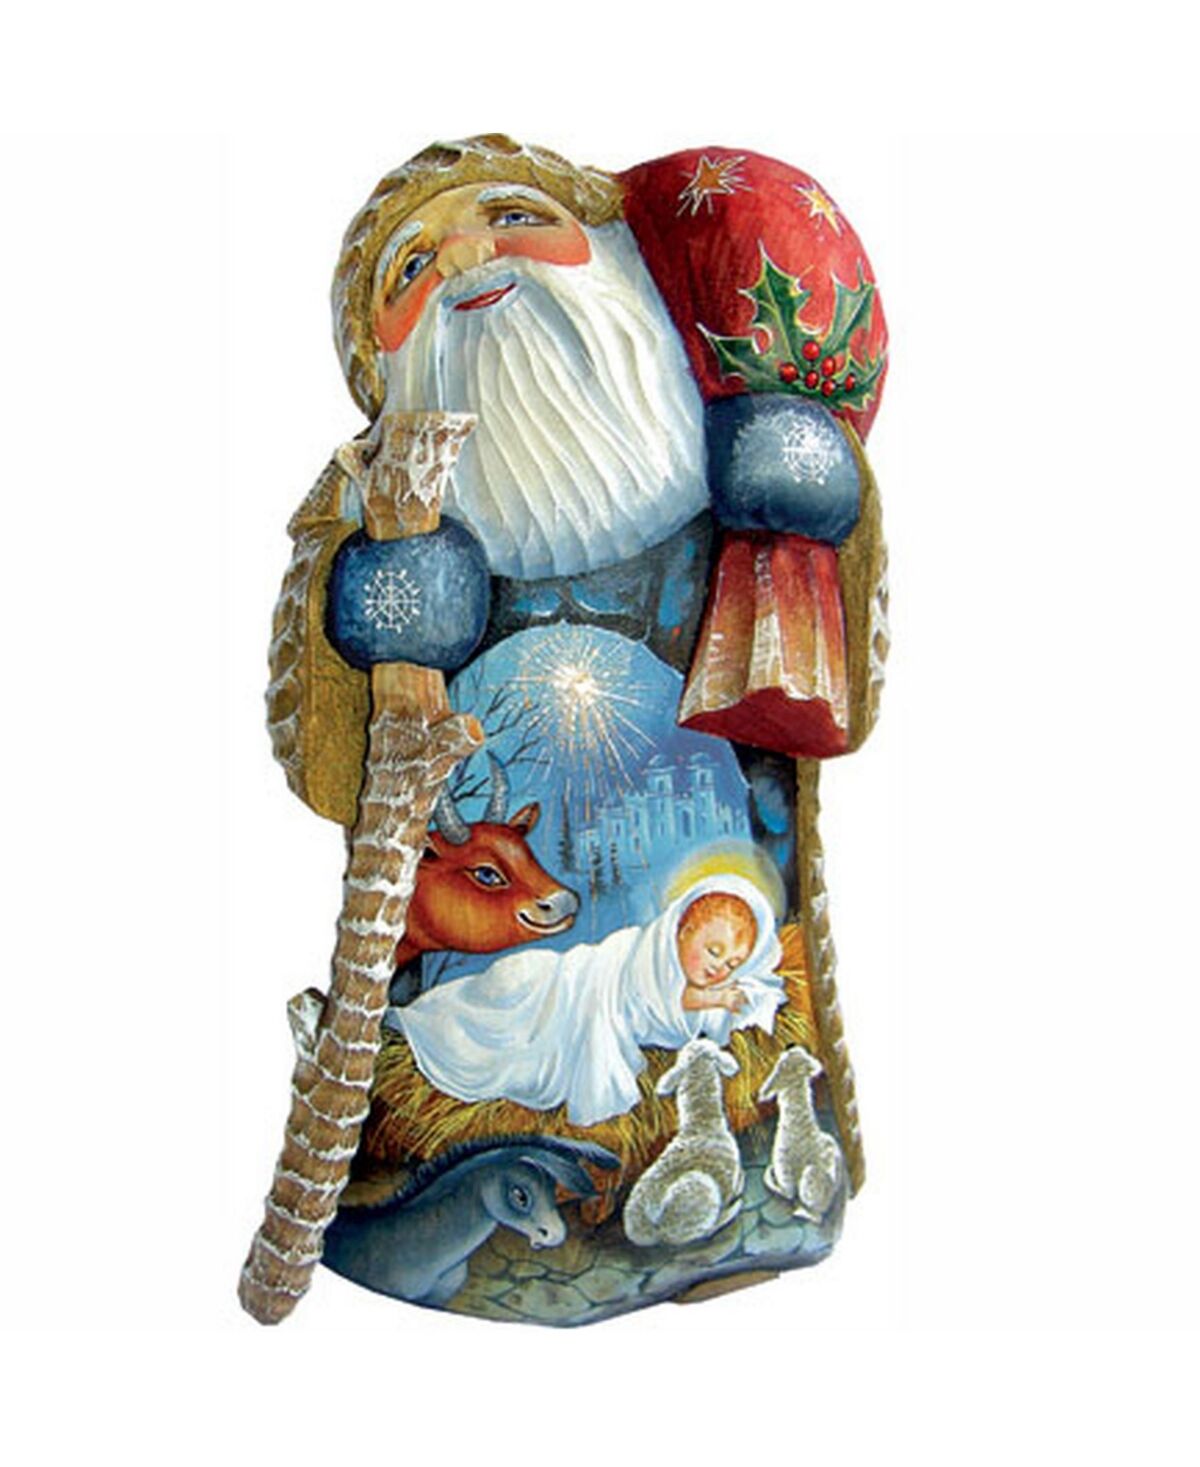 G.DeBrekht Woodcarved Peaceful Santa Figurine - Multi